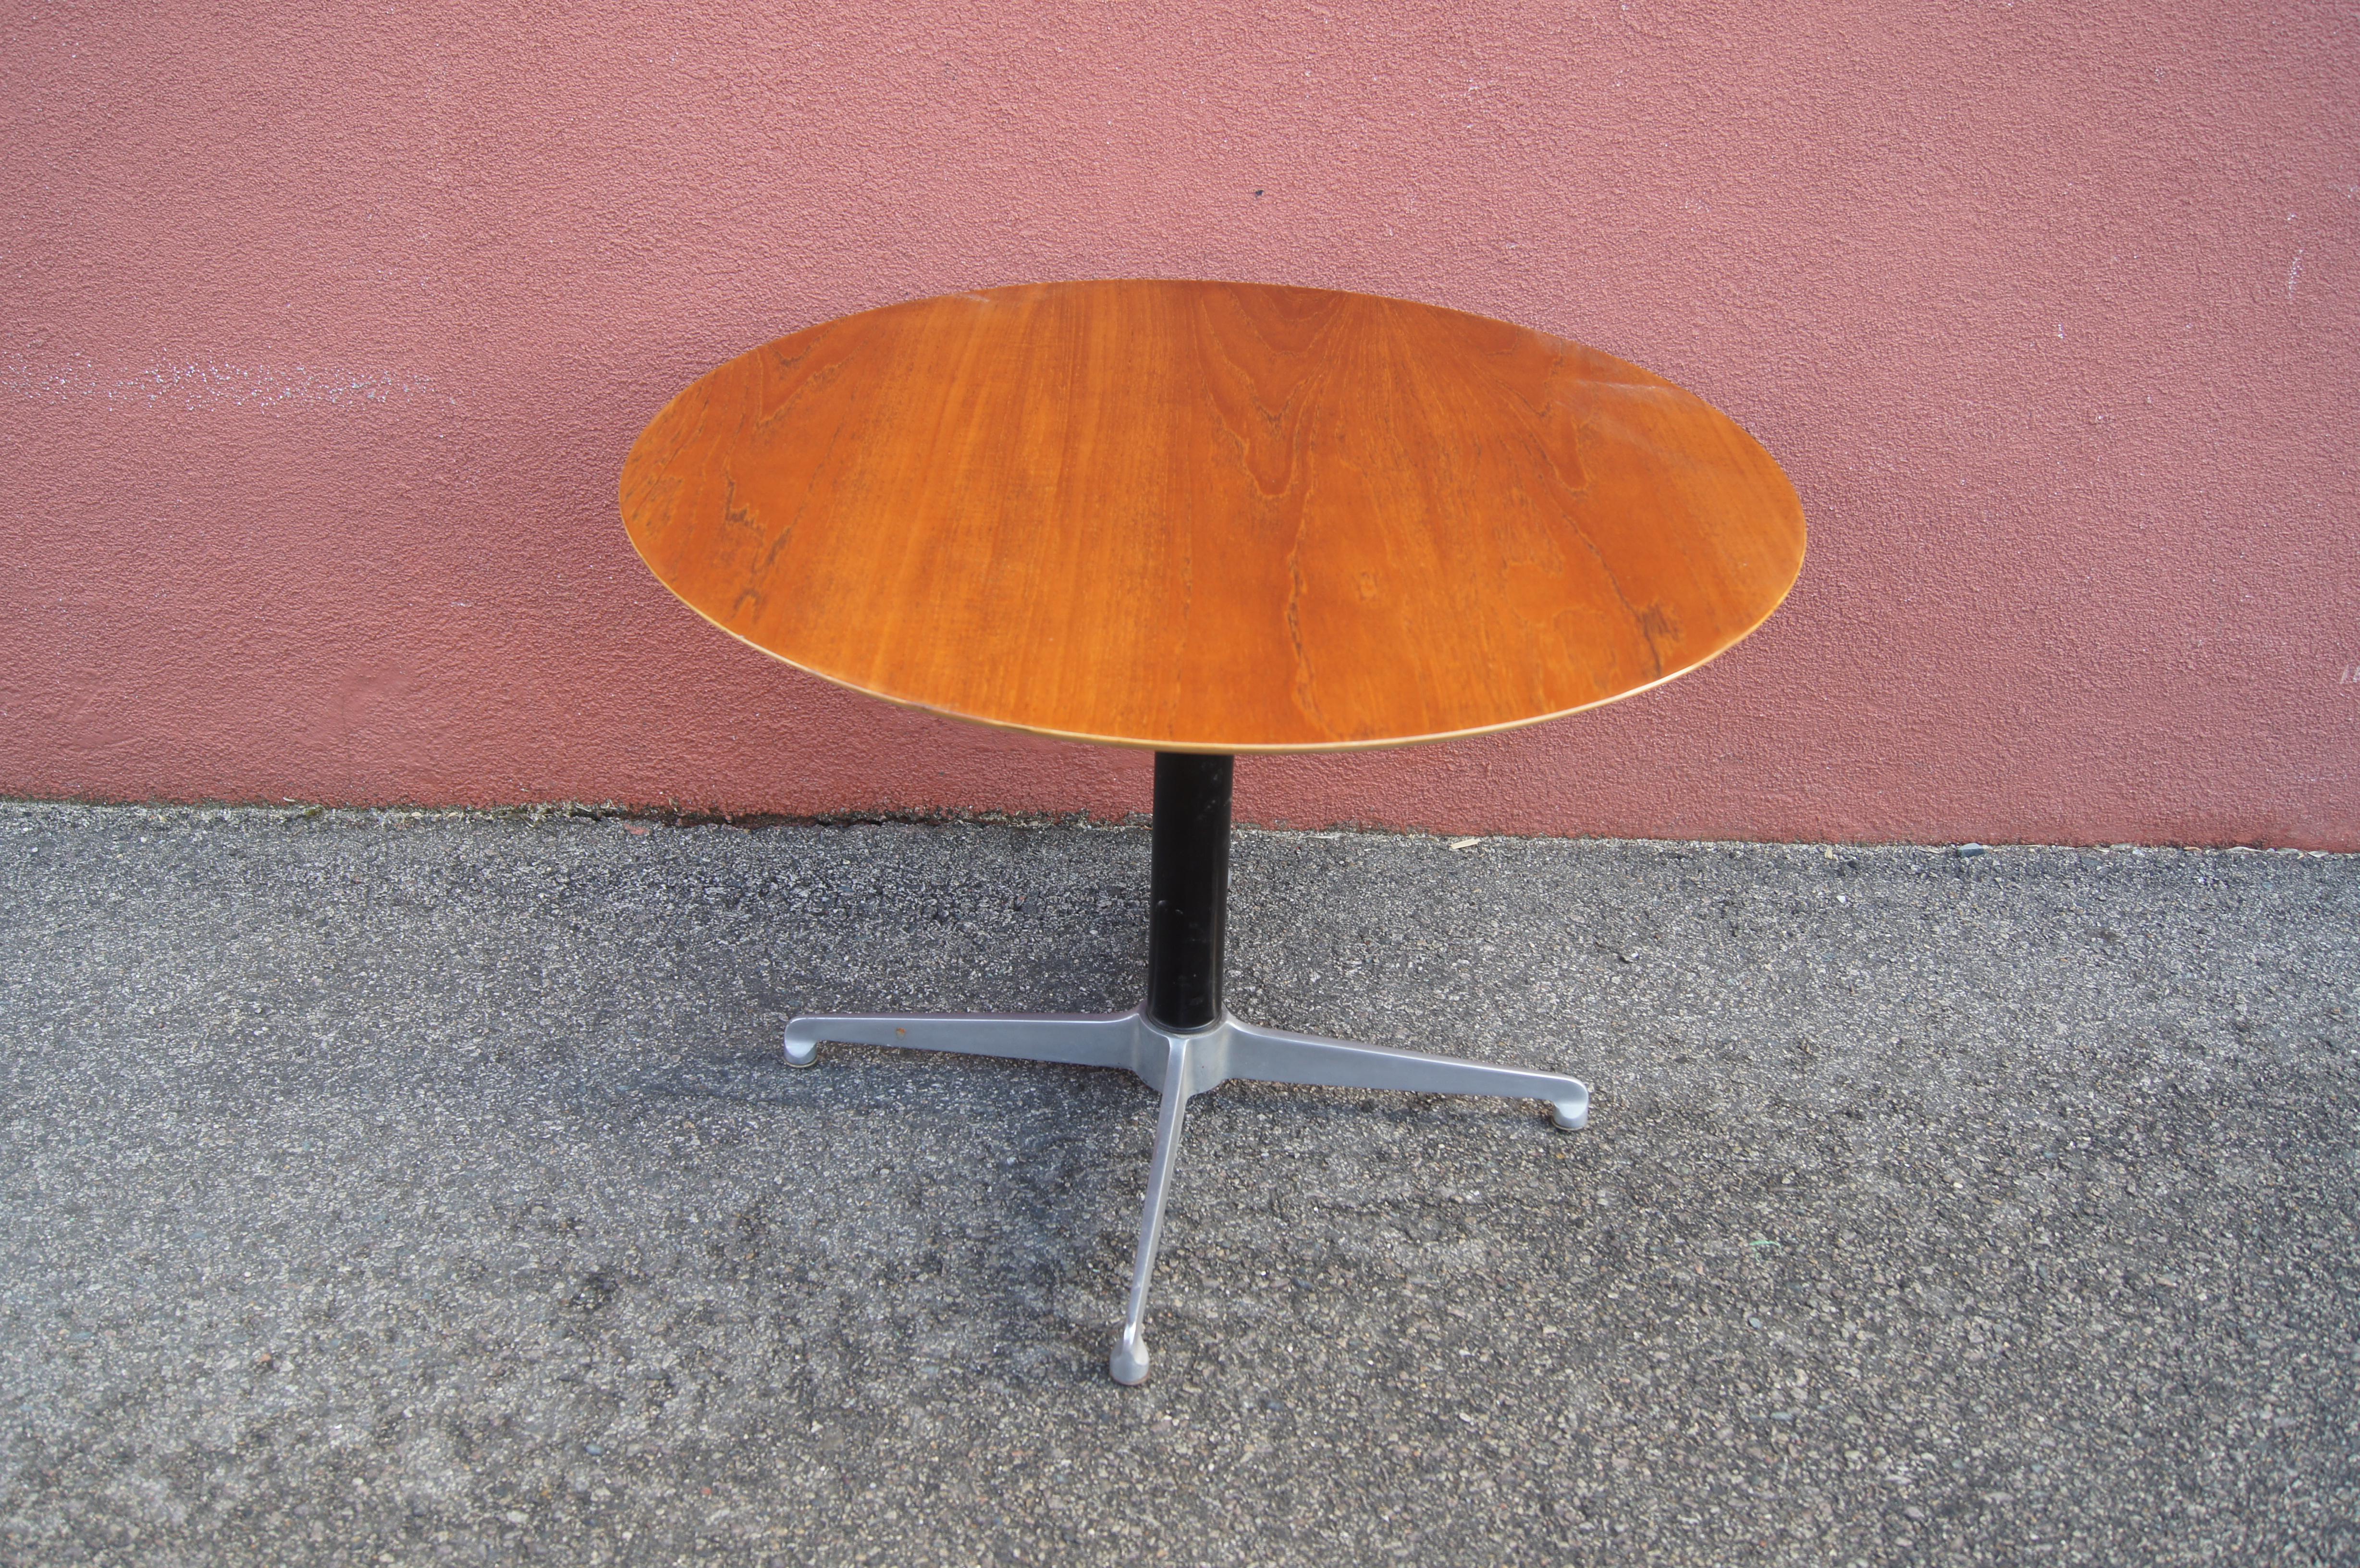 Cette table danoise a un plateau rond en teck sur un socle à quatre branches. La hauteur se règle facilement de 16,25 pouces à 26,5 pouces, ce qui permet de l'utiliser comme petite table basse ou comme table d'appoint.